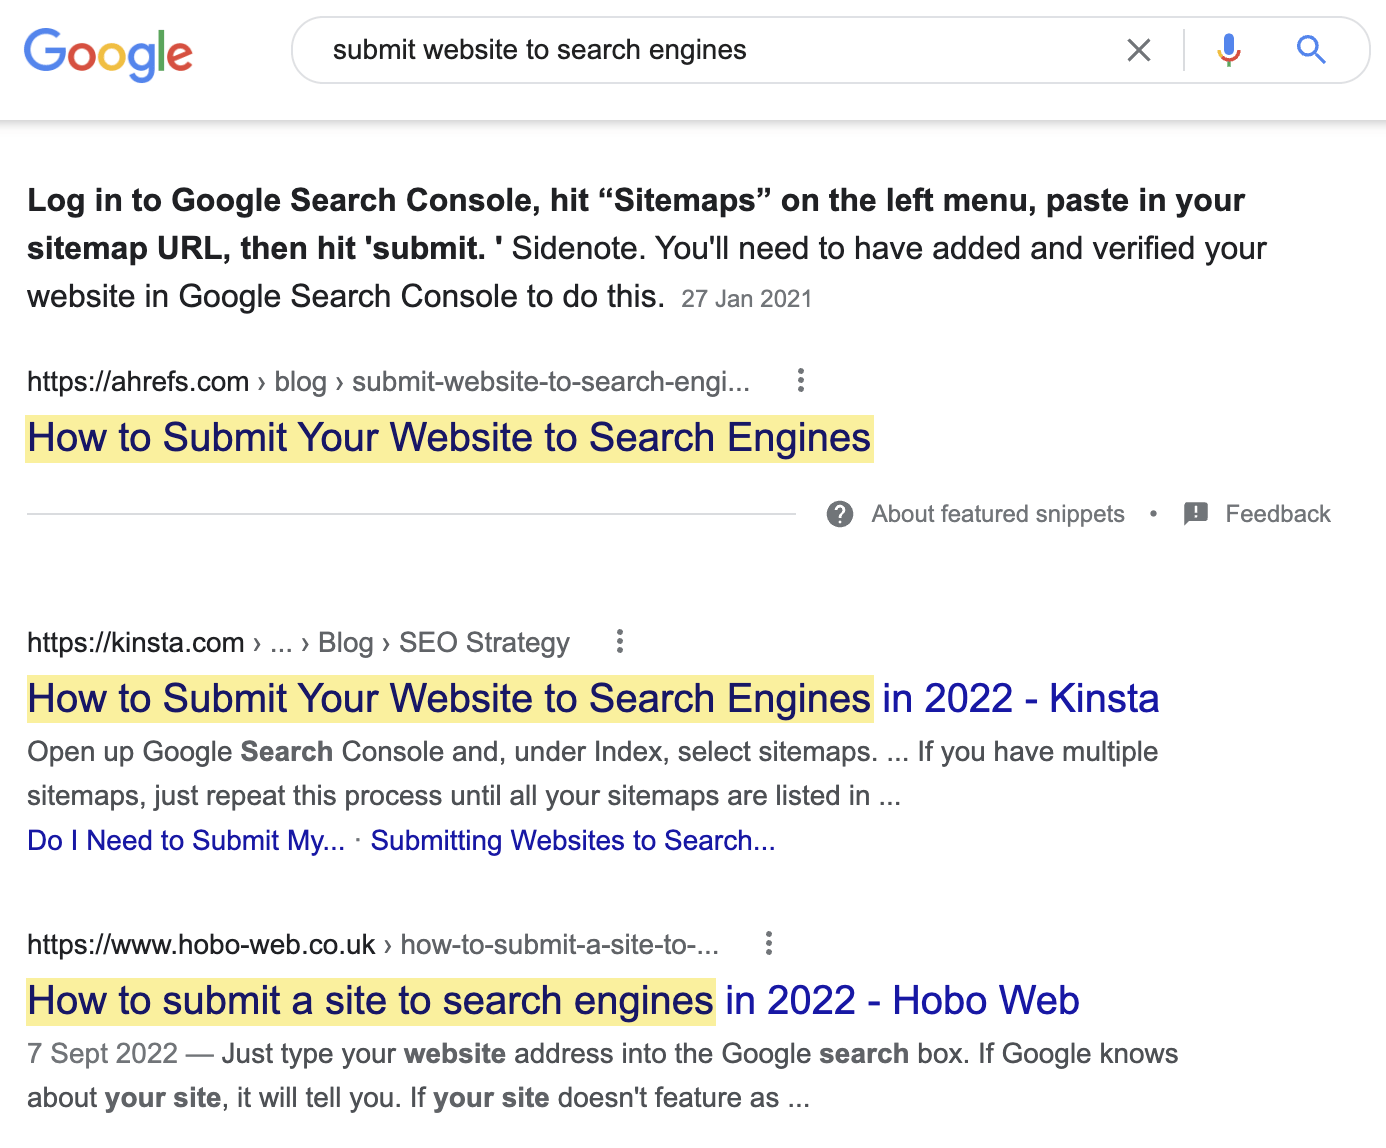 用户搜索 "submit website to search engines" 想知道如何提交他们的网站